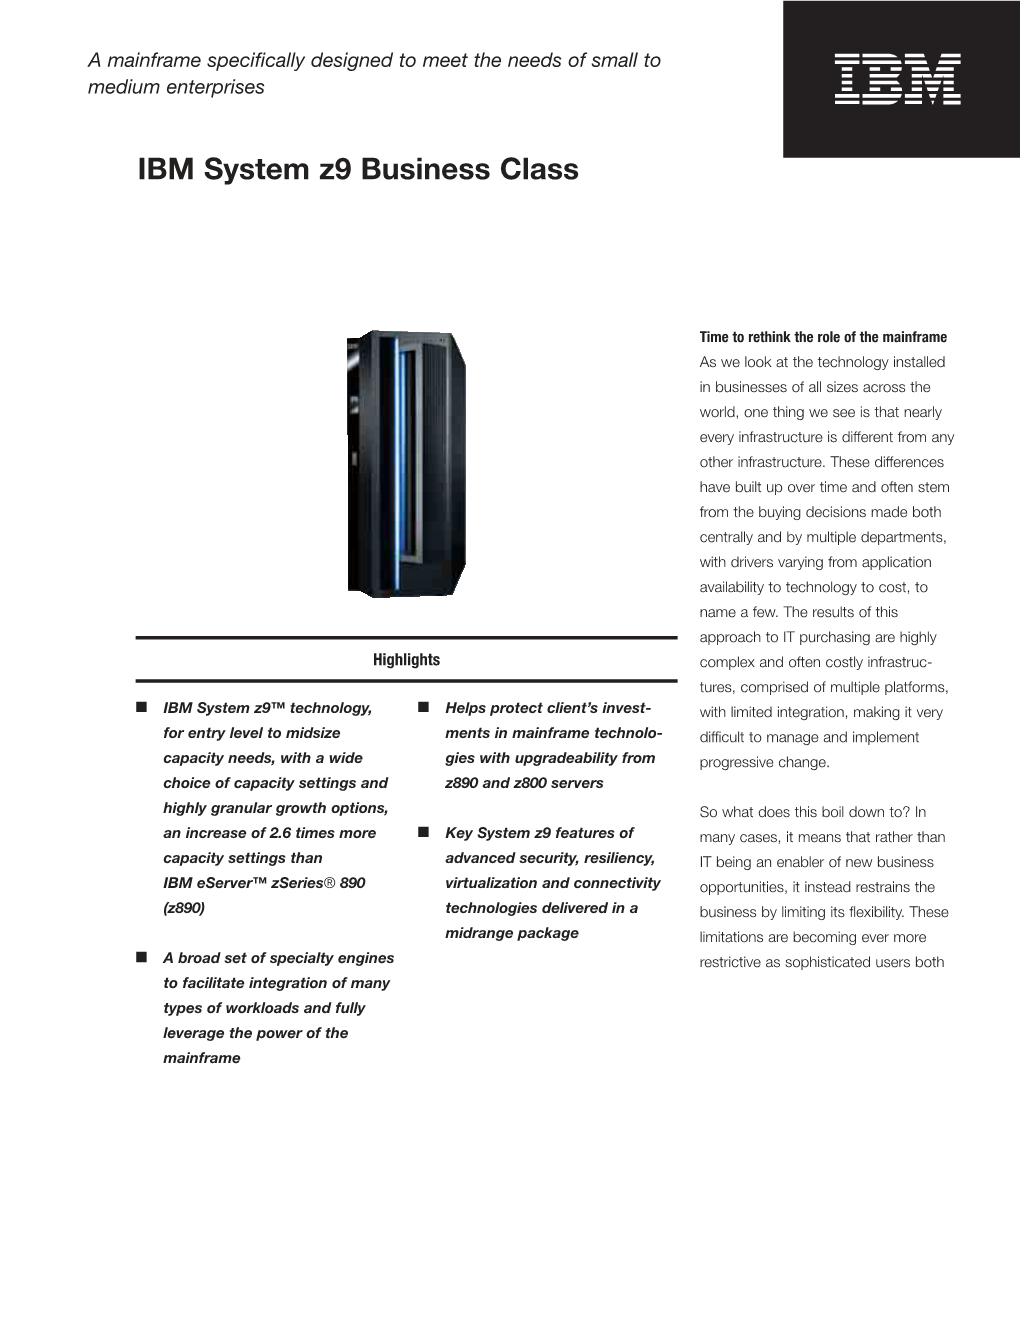 IBM System Z9 Business Class